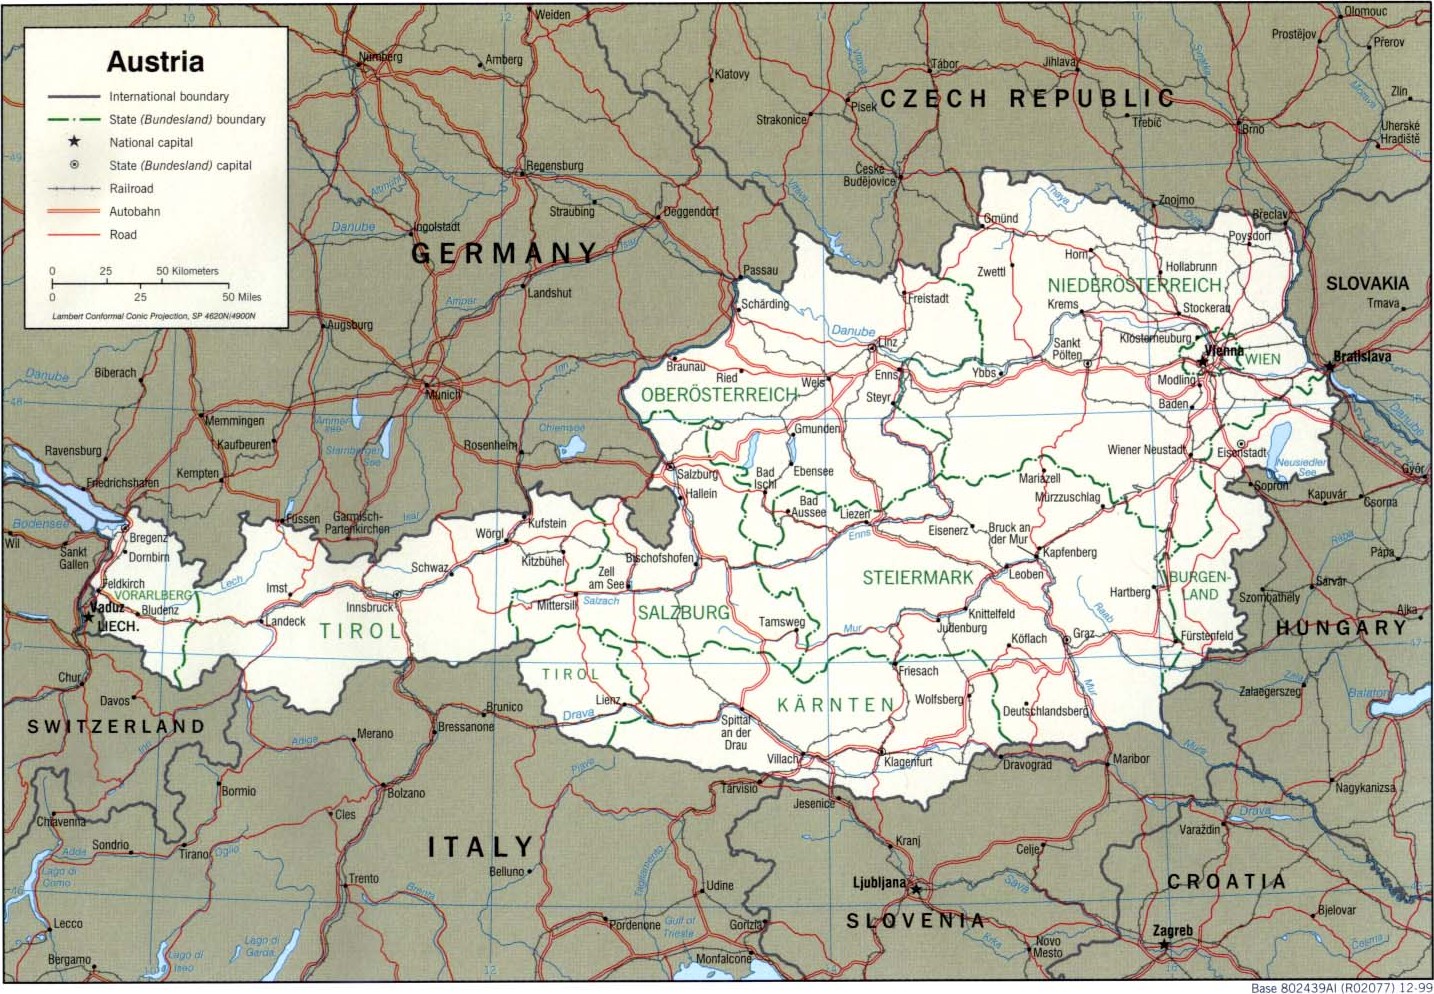 Cartograf.fr : L'Autriche